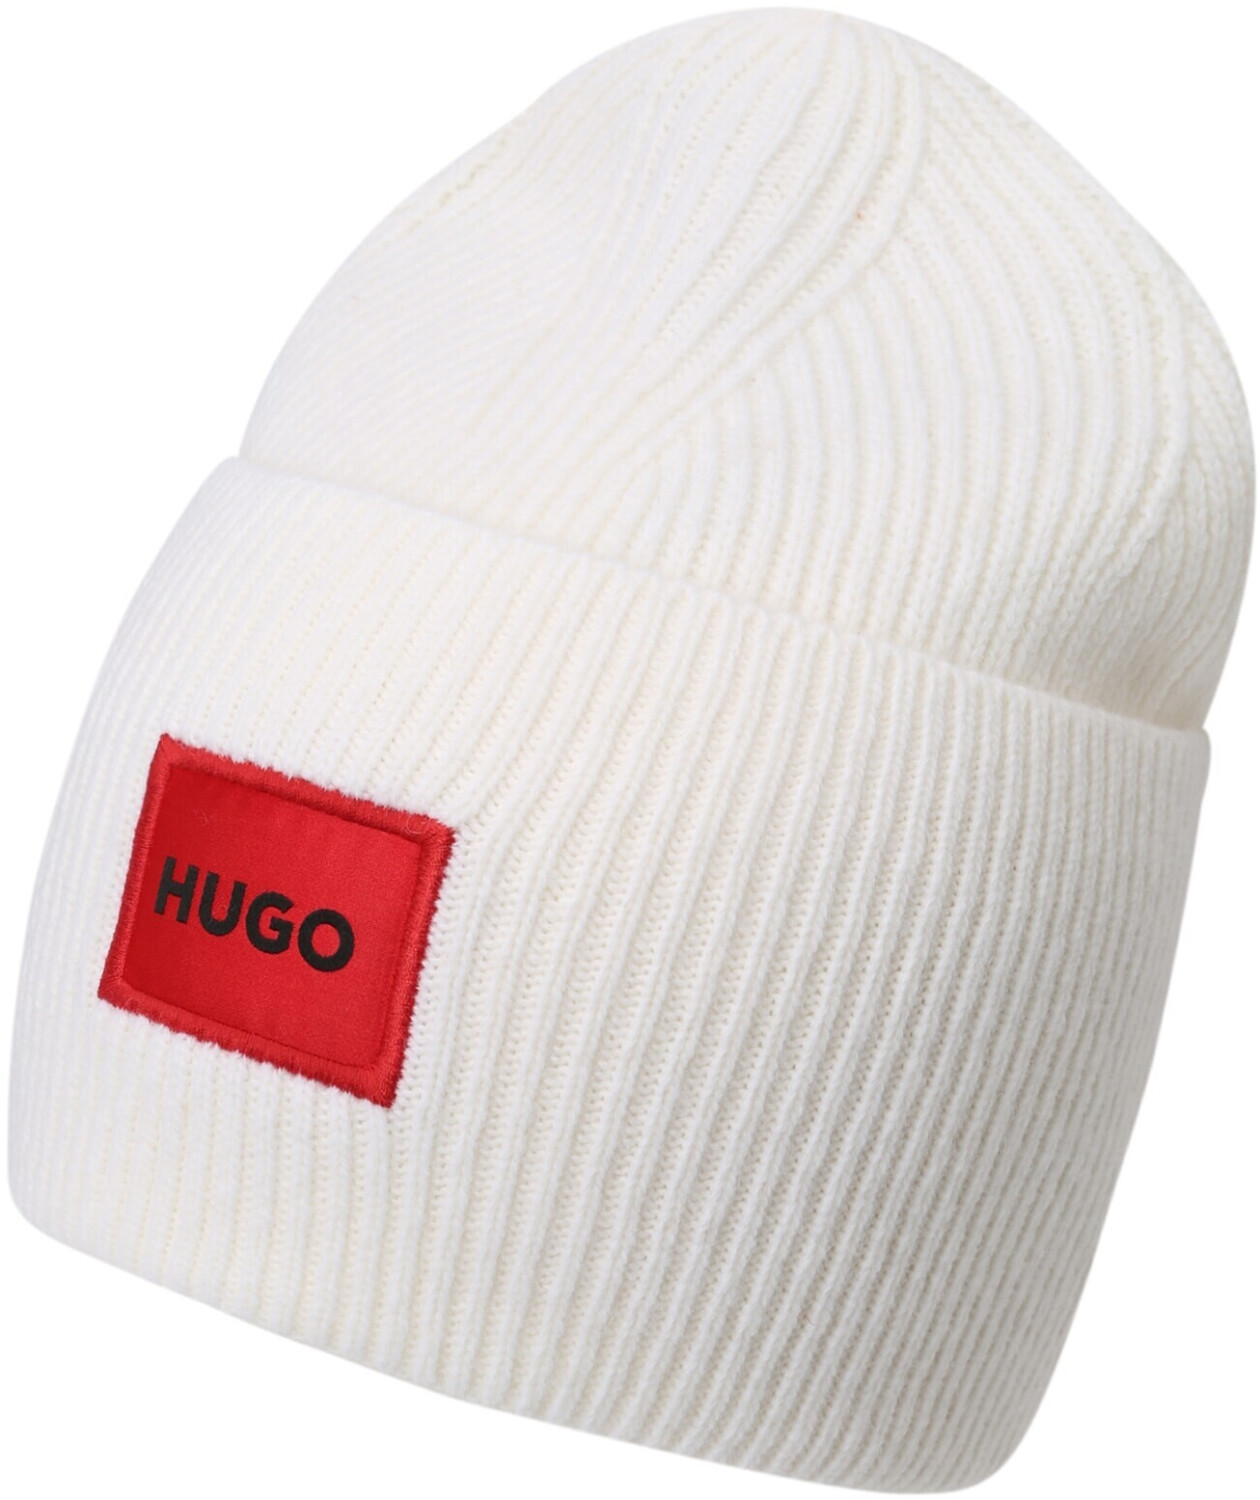 Hugo Xaff 6 (50496011) white ab 60,00 € | Preisvergleich bei